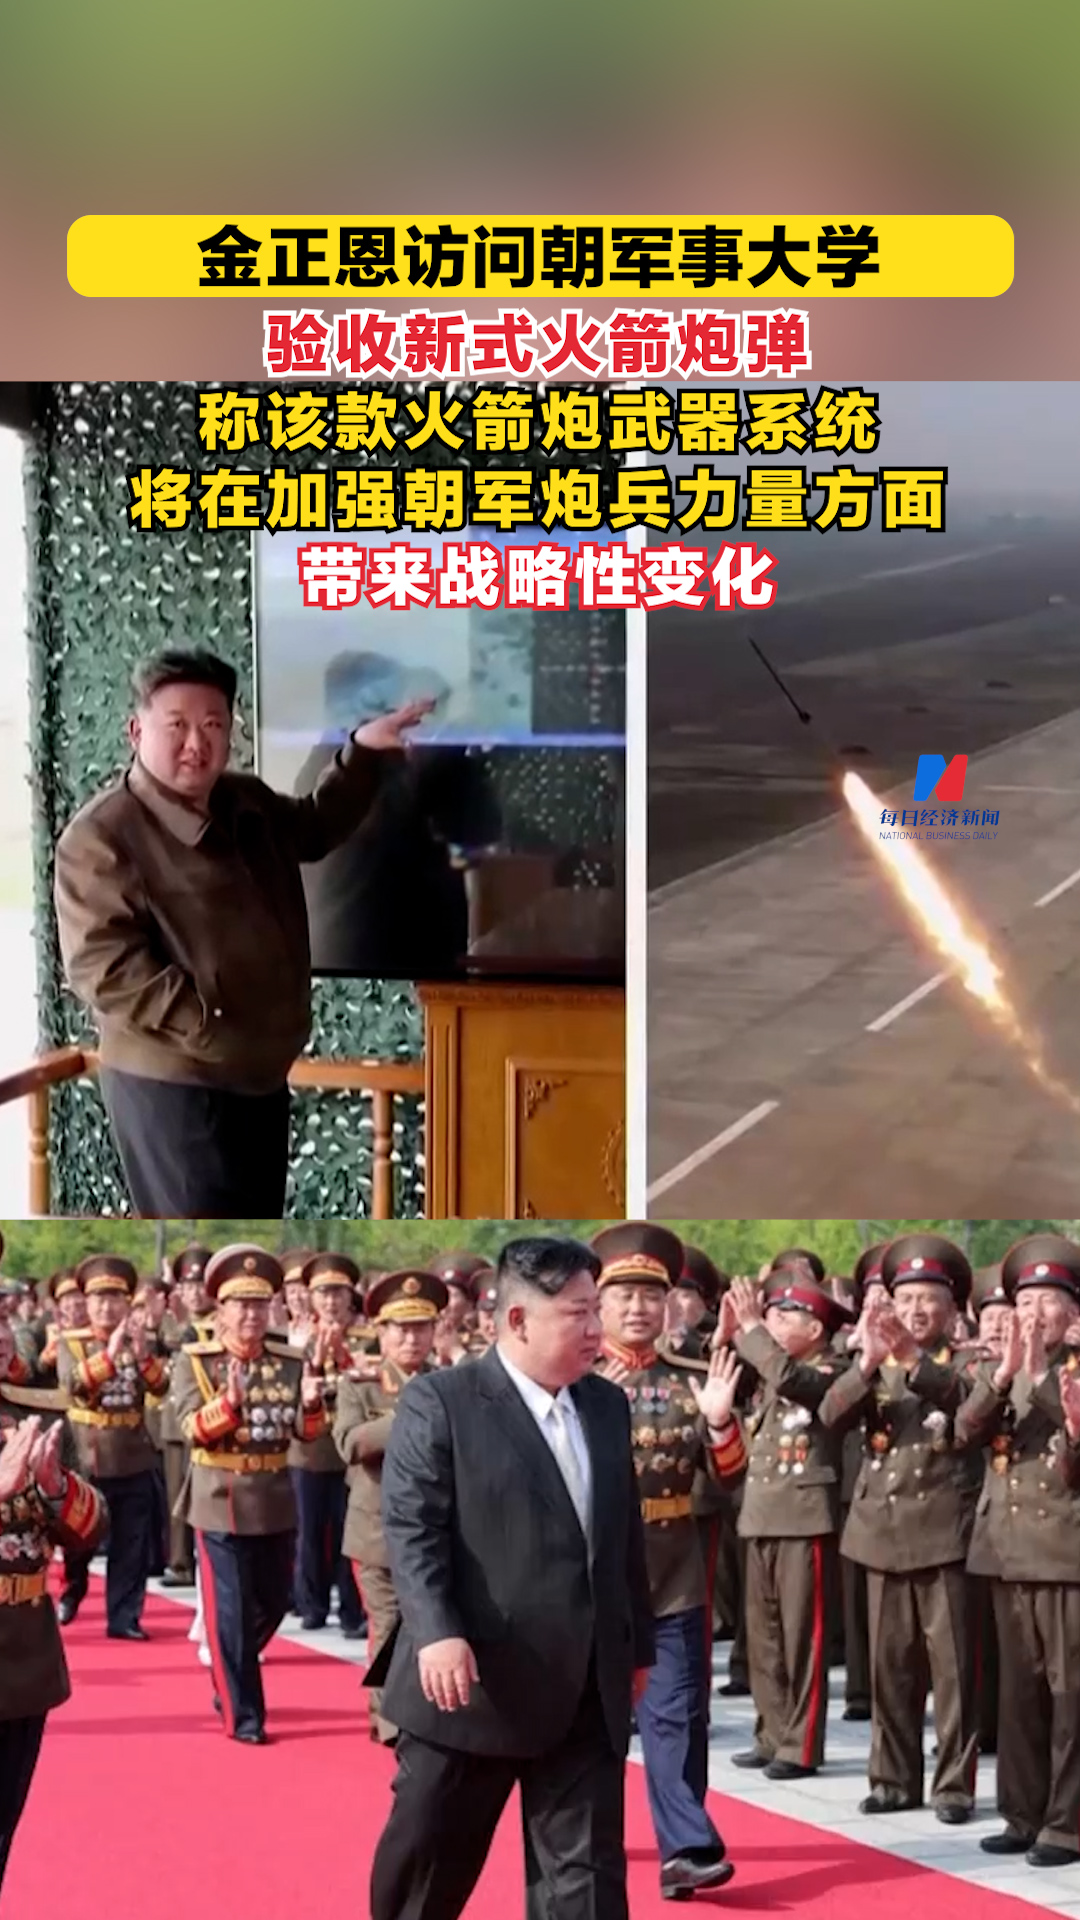 金正恩访问朝军事大学并验收新式火箭炮弹 称采用新技术的该款火箭炮武器系统将“在加强朝军炮兵力量方面带来战略性变化”